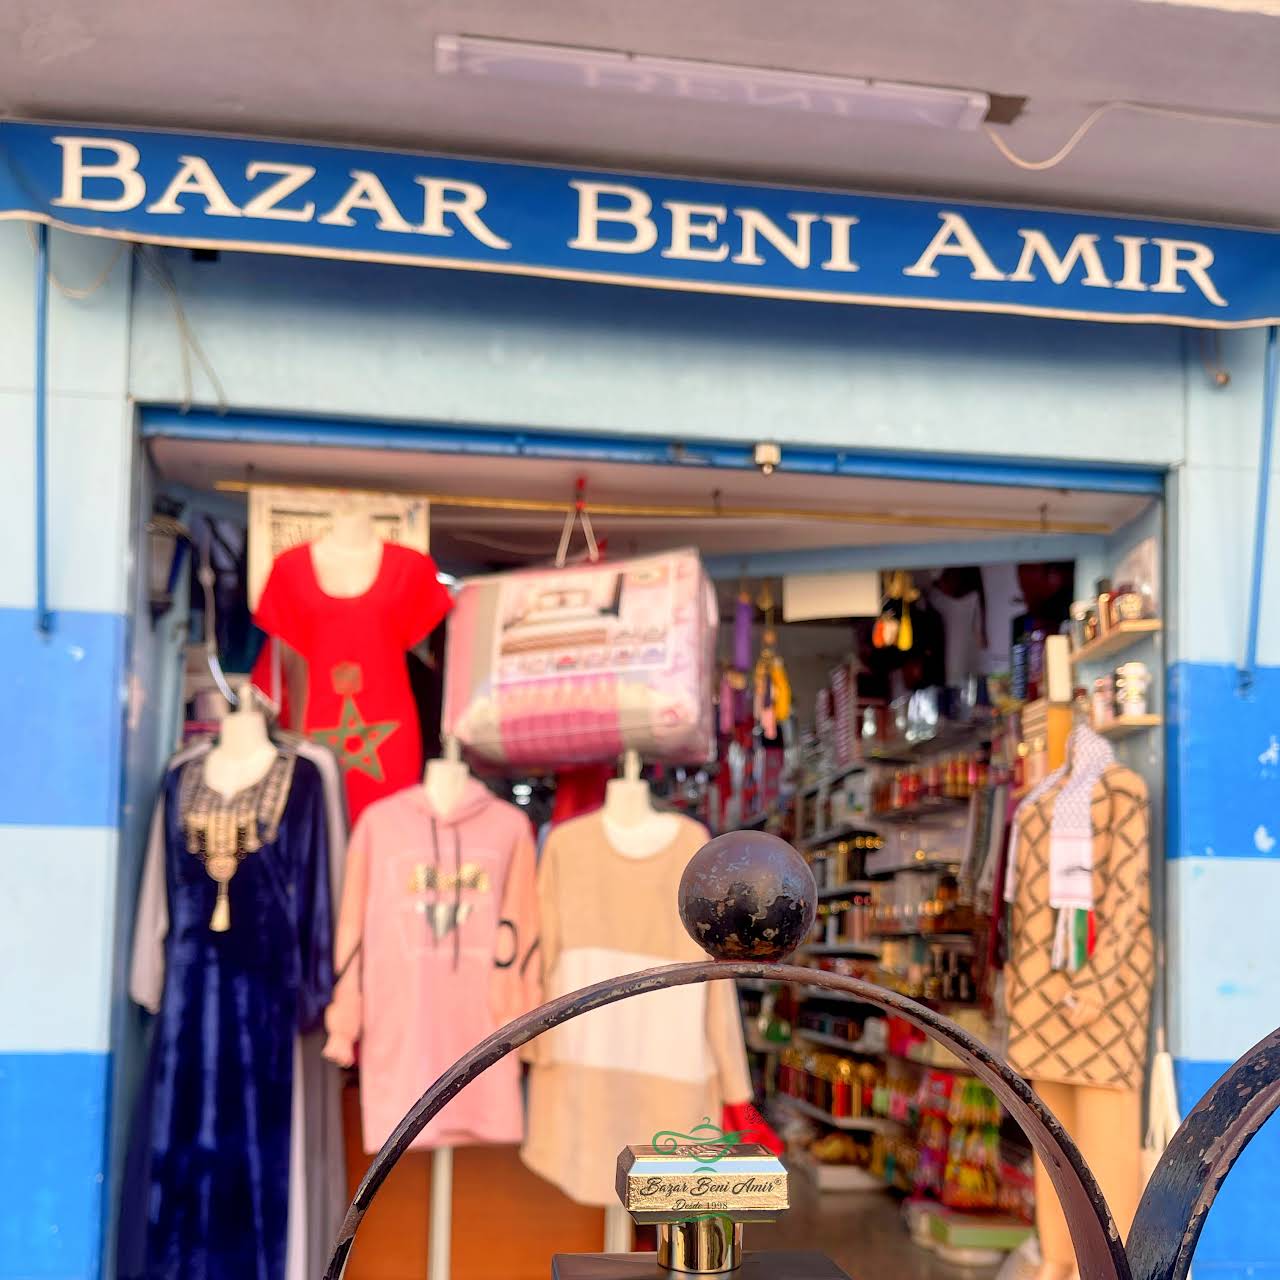 Tetera marroquí grabada – Bazar Beni Amir